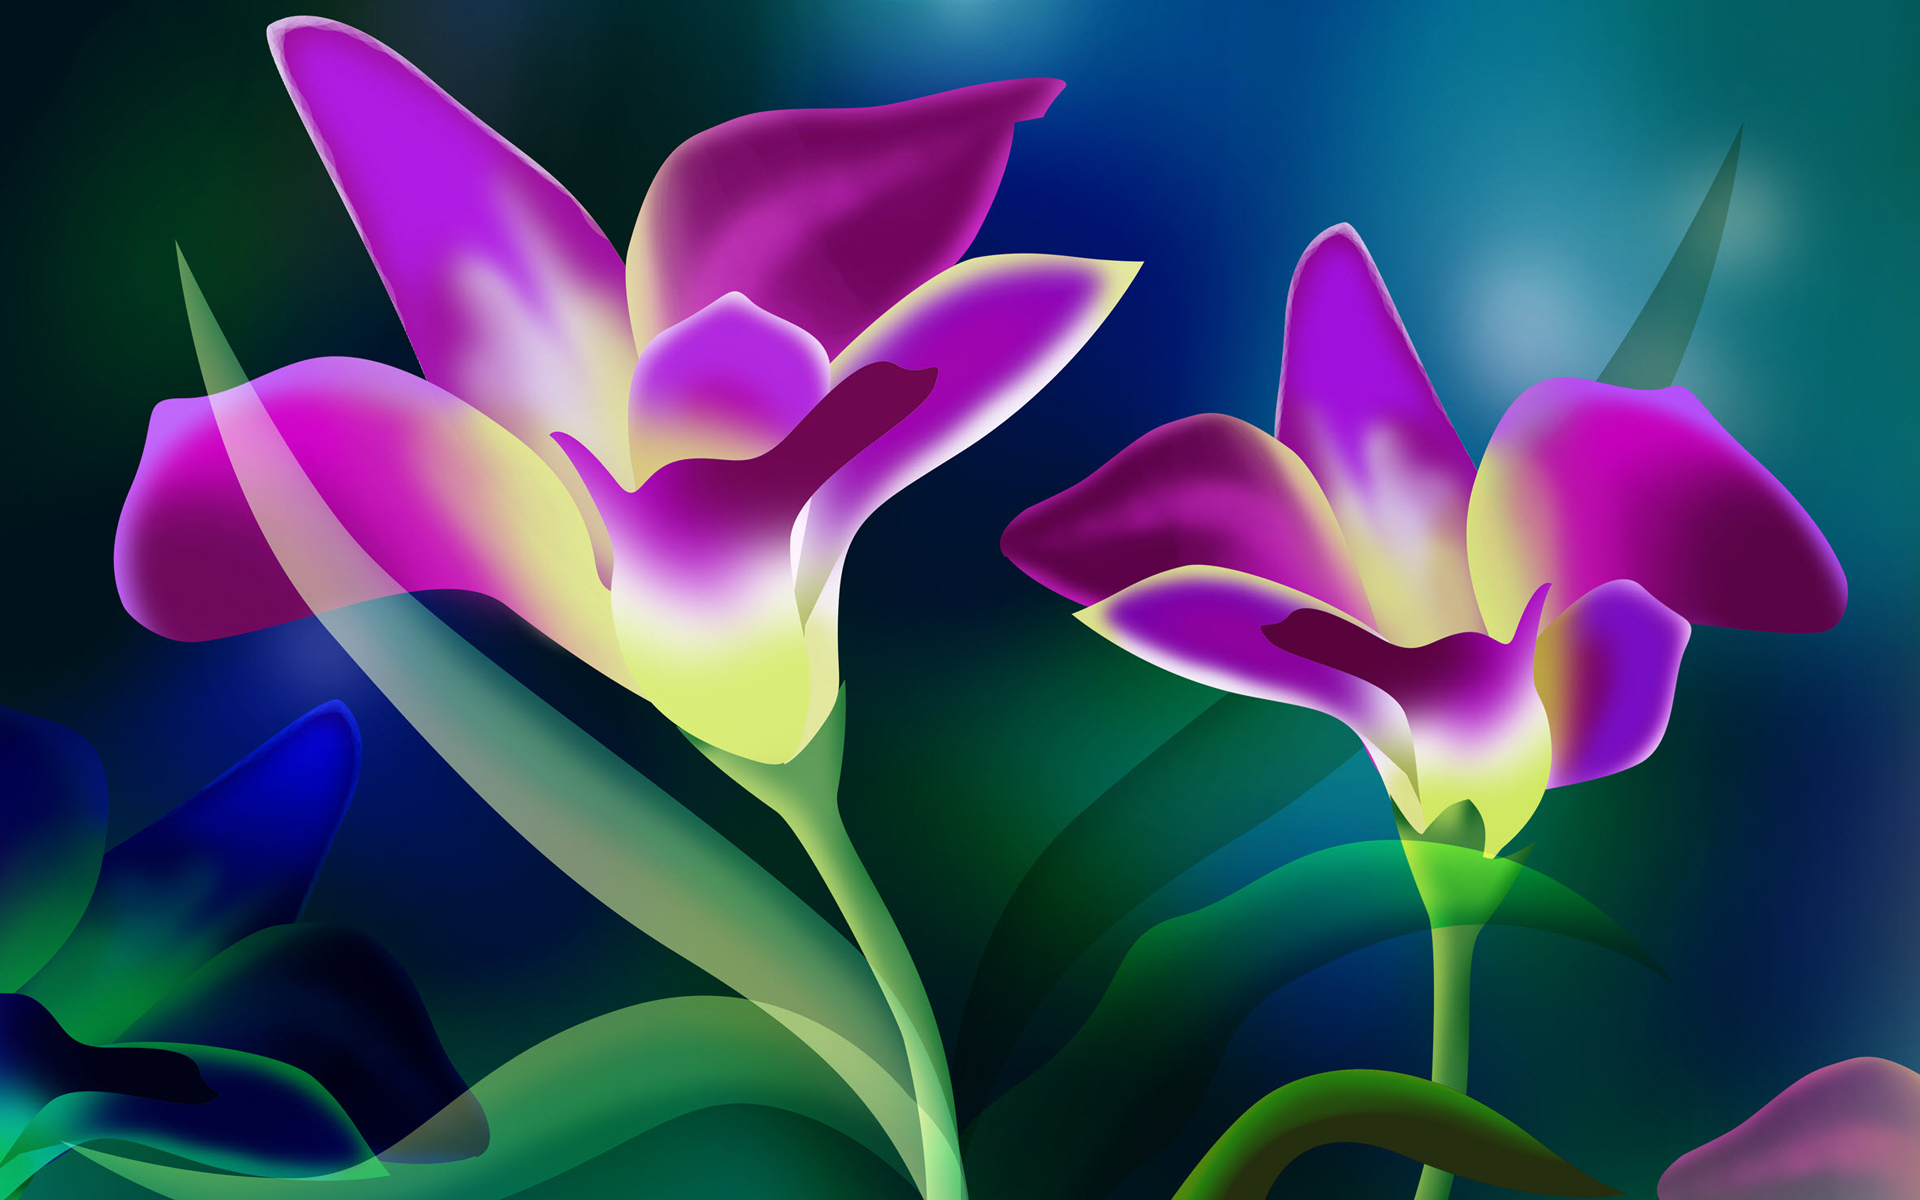 Download 21 Purple-flower-hd-wallpaper Beautiful-Purple-Flower-4K-HD-Desktop-Wallpaper-for-4K-.jpg